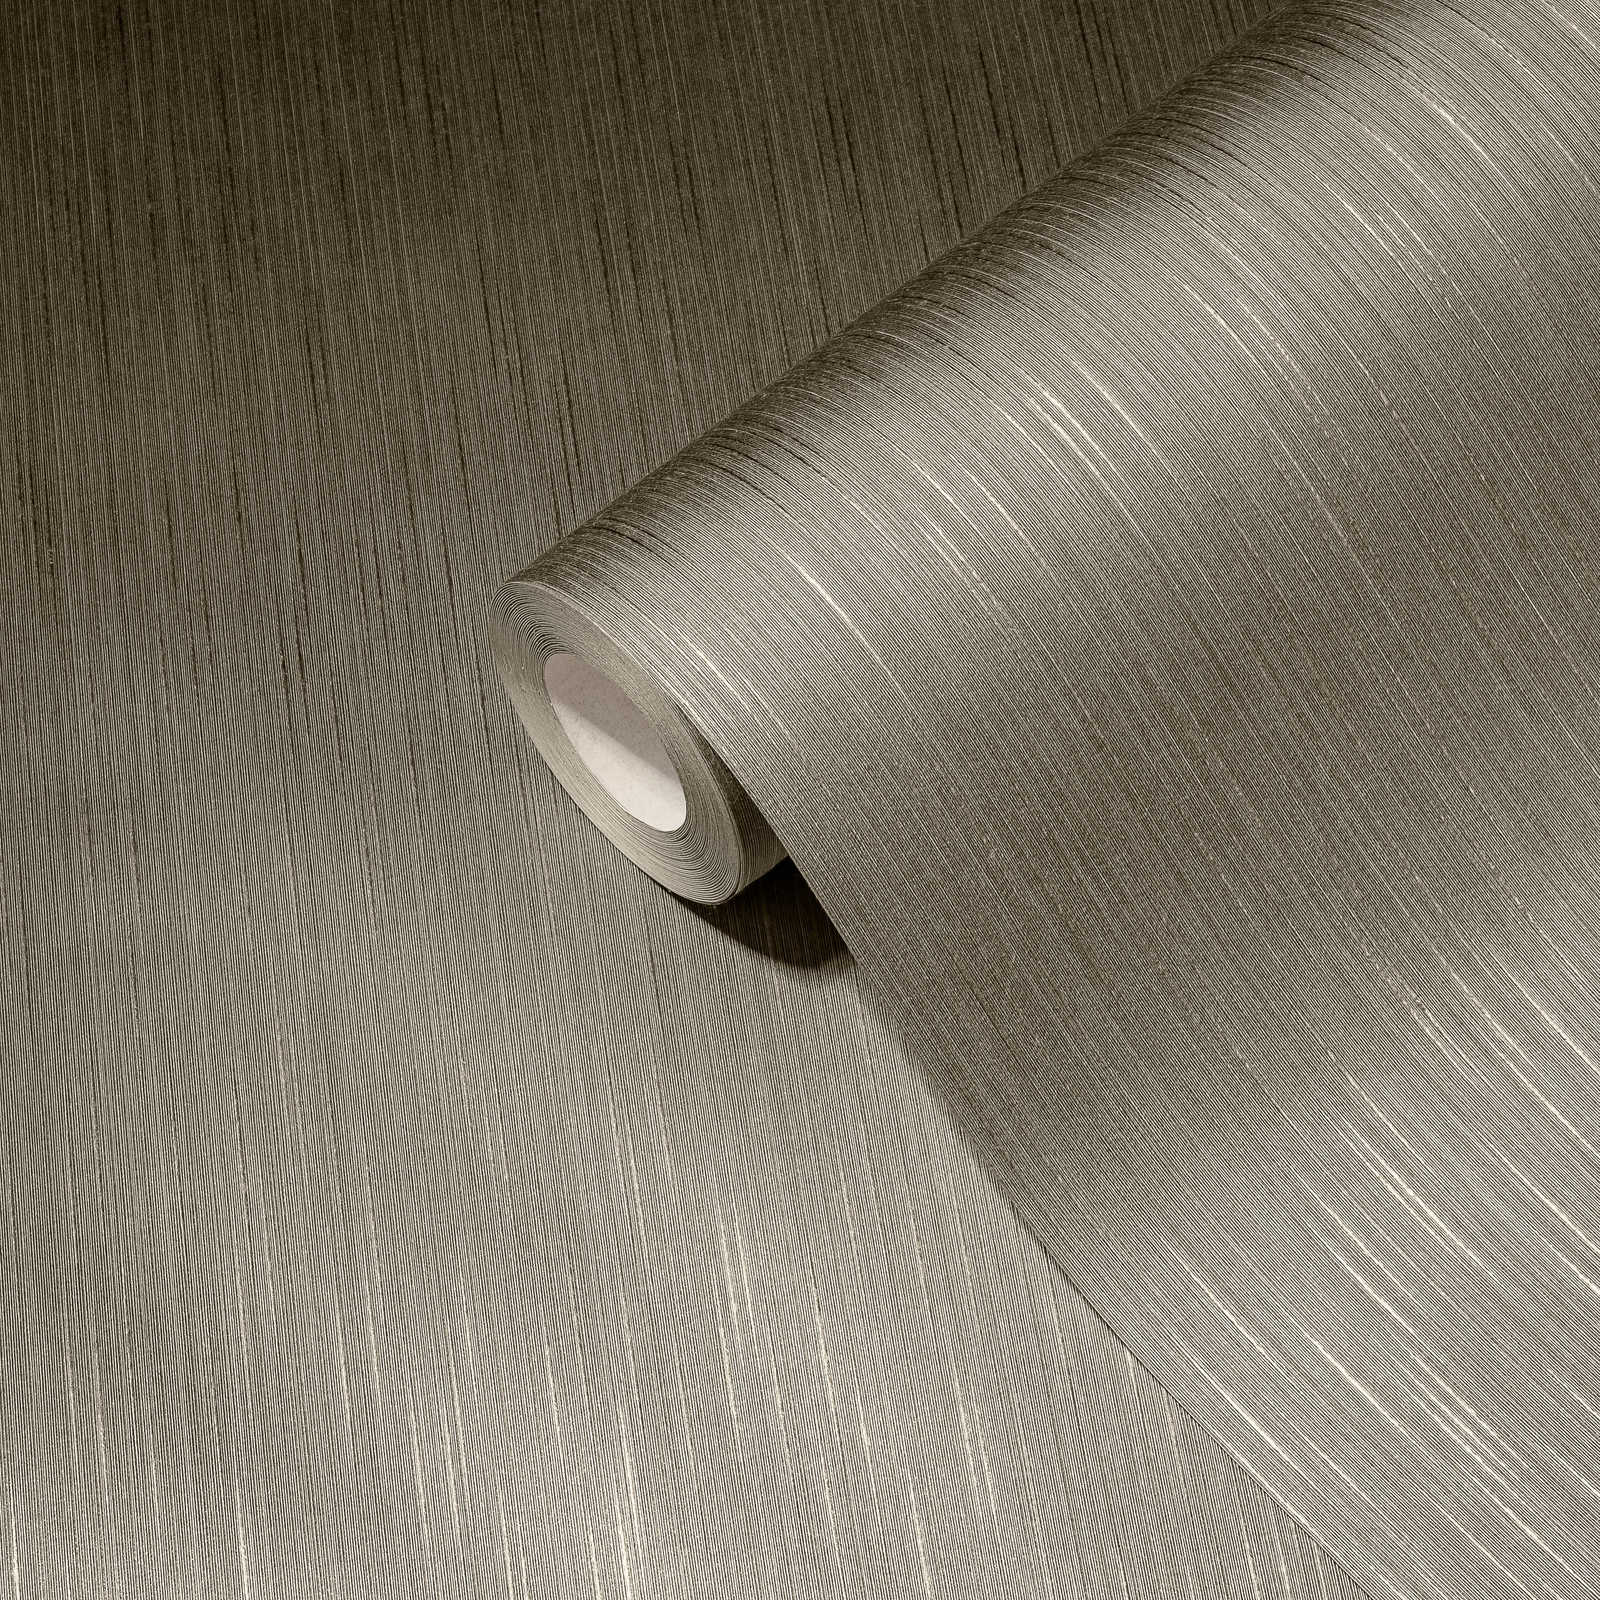             Papier peint design textile gris-marron avec motif chiné
        